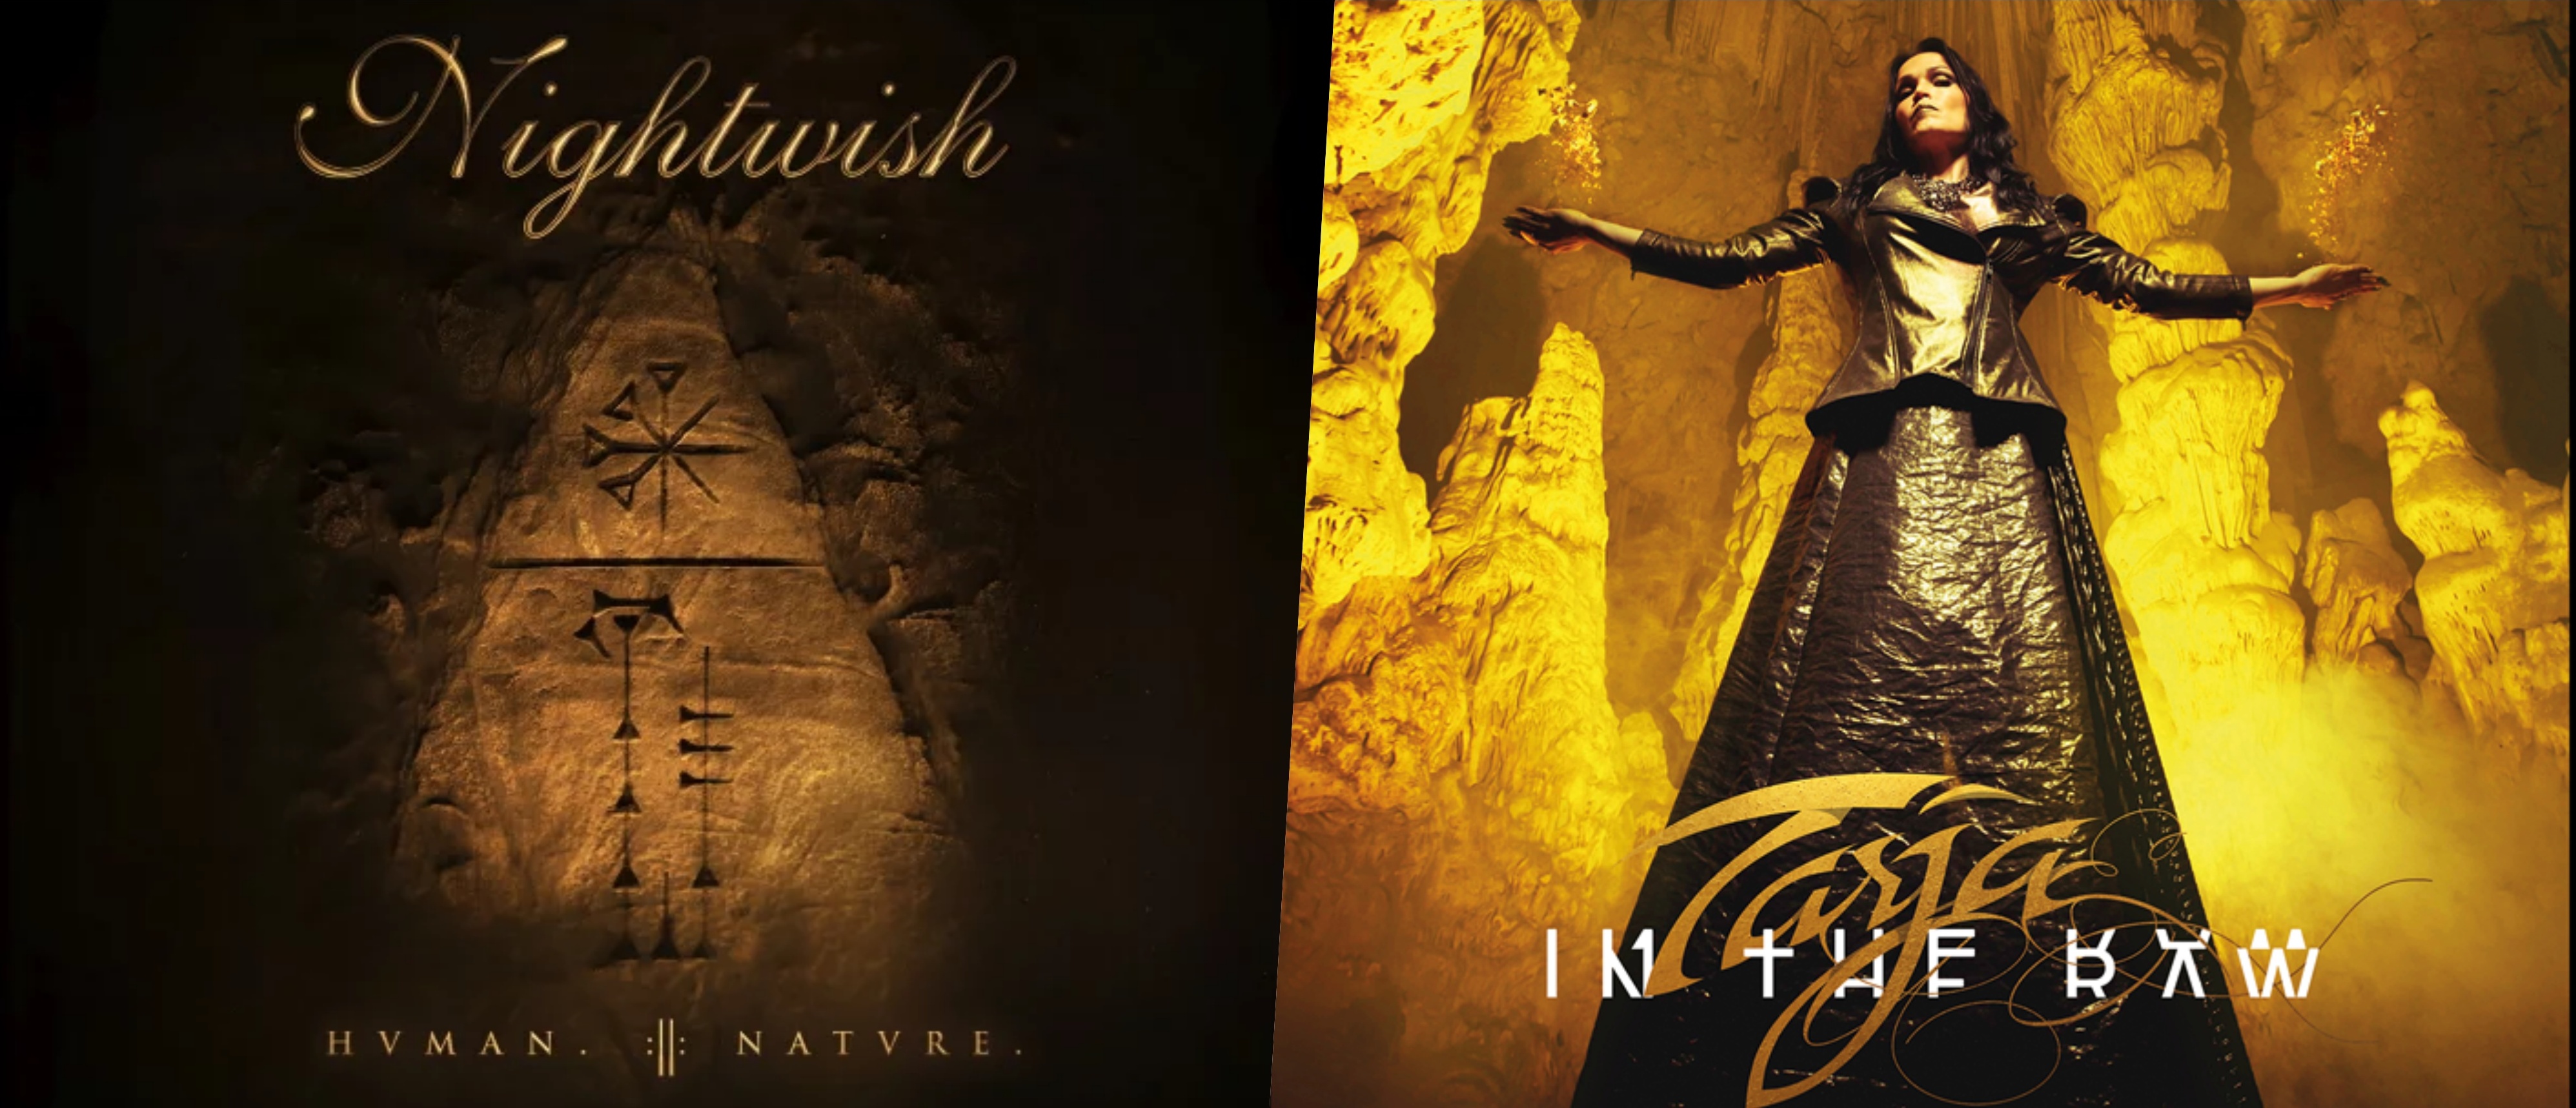 Hoppá, micsoda véletlen! Elképesztő hasonlóság a Nightwish és egykori énekesnőjük borítója között